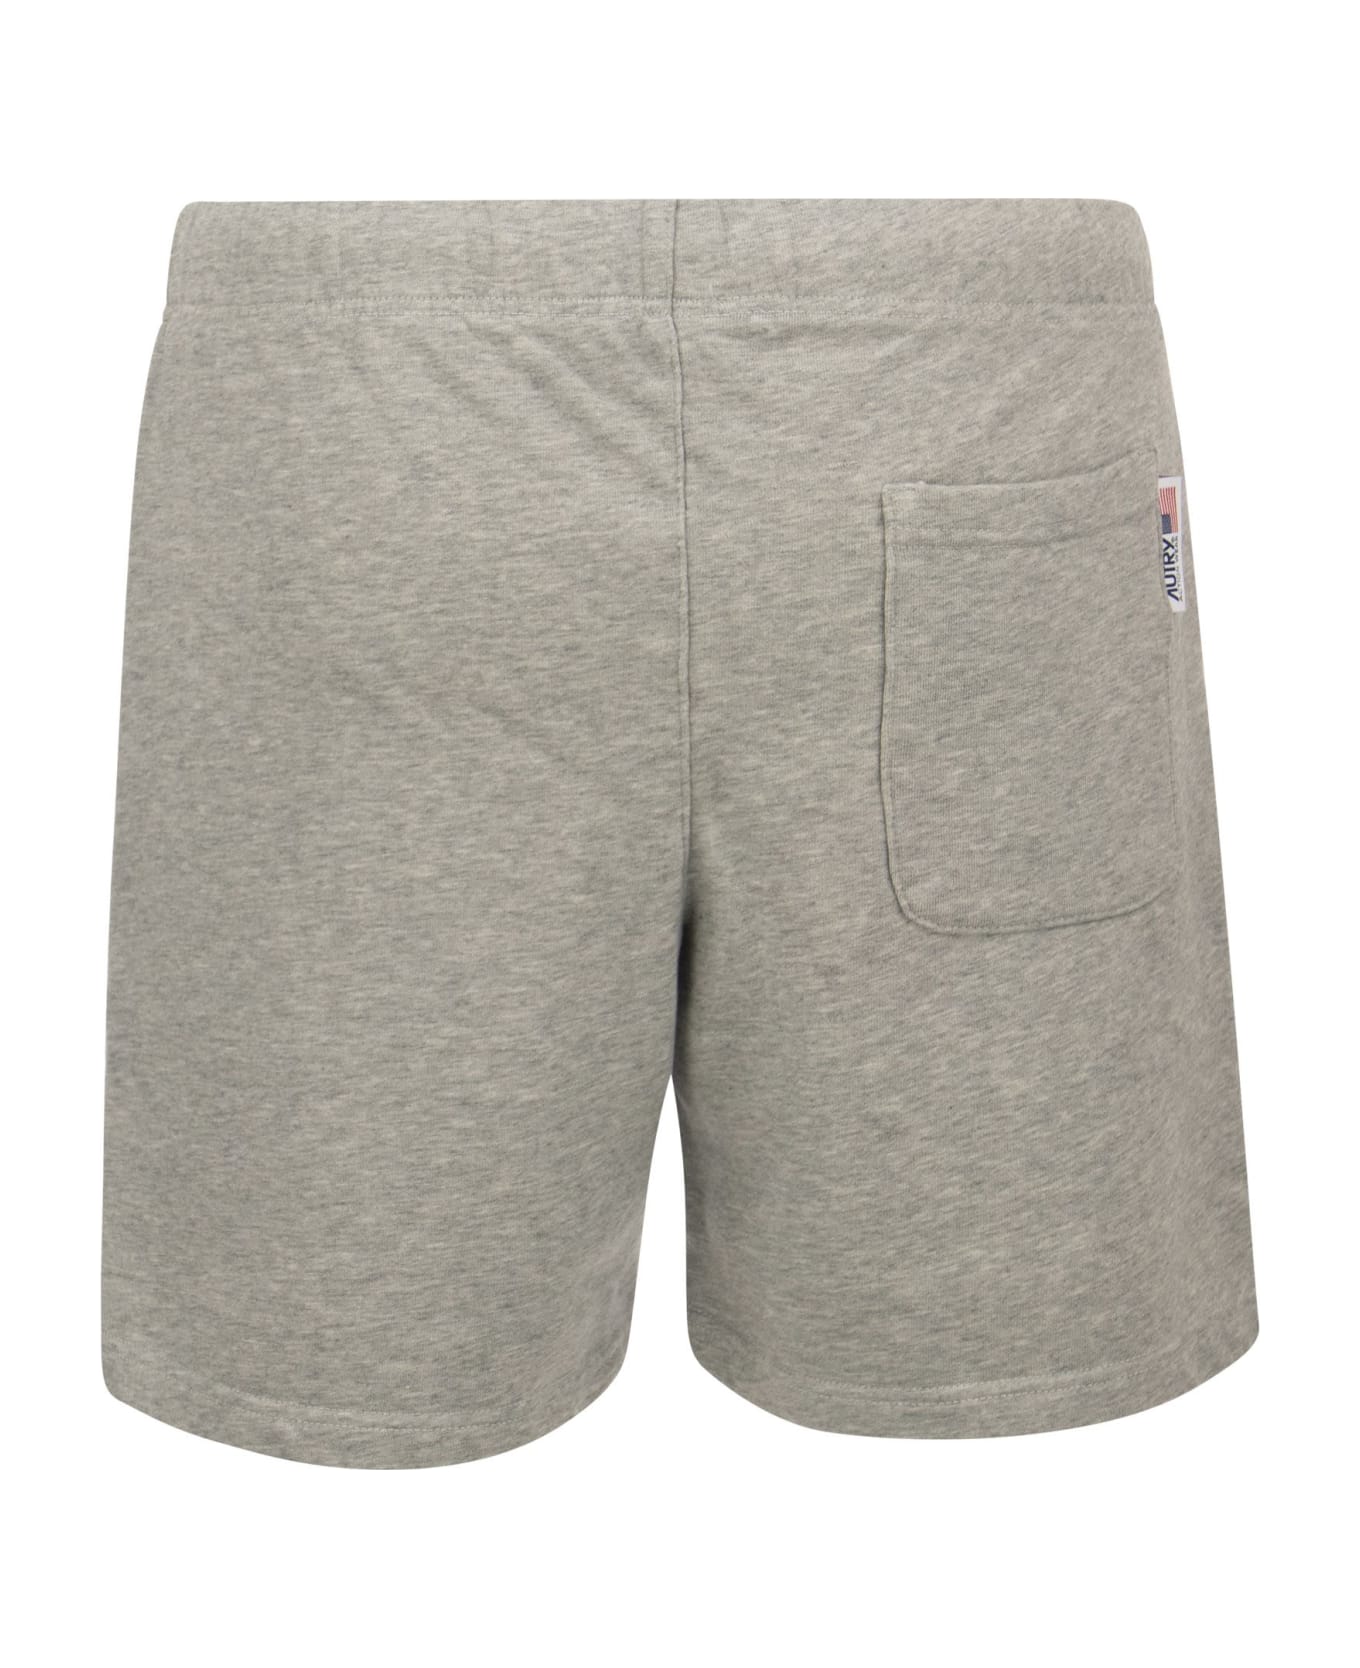 Autry Bermuda Shorts With Tennis Club Logo - Grey